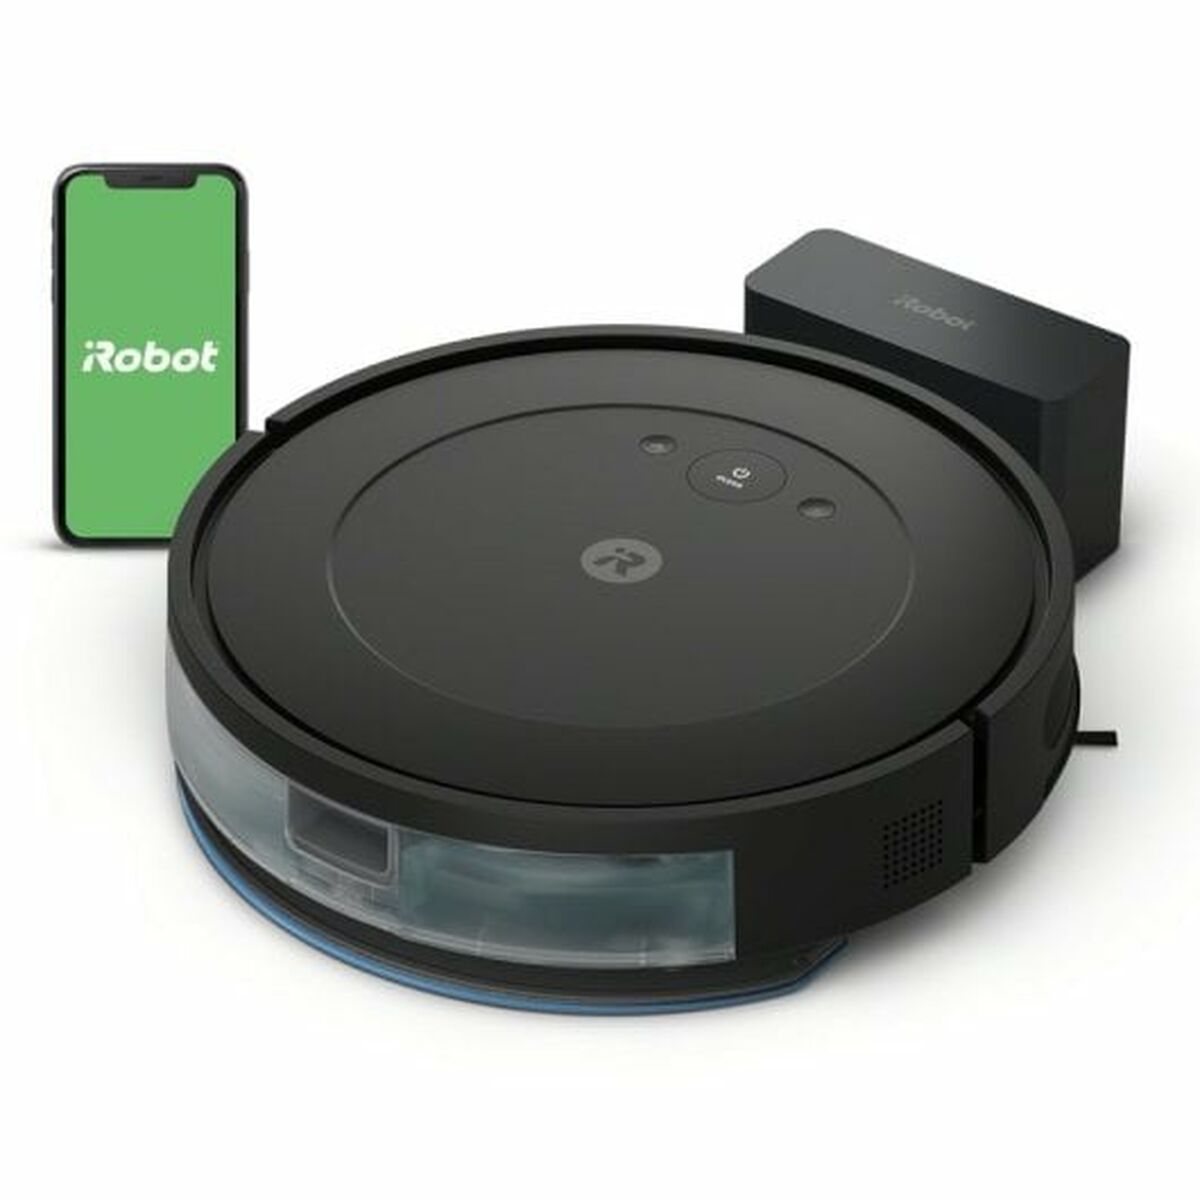 Roboterstaubsauger iRobot Roomba Combo Essential - CA International 